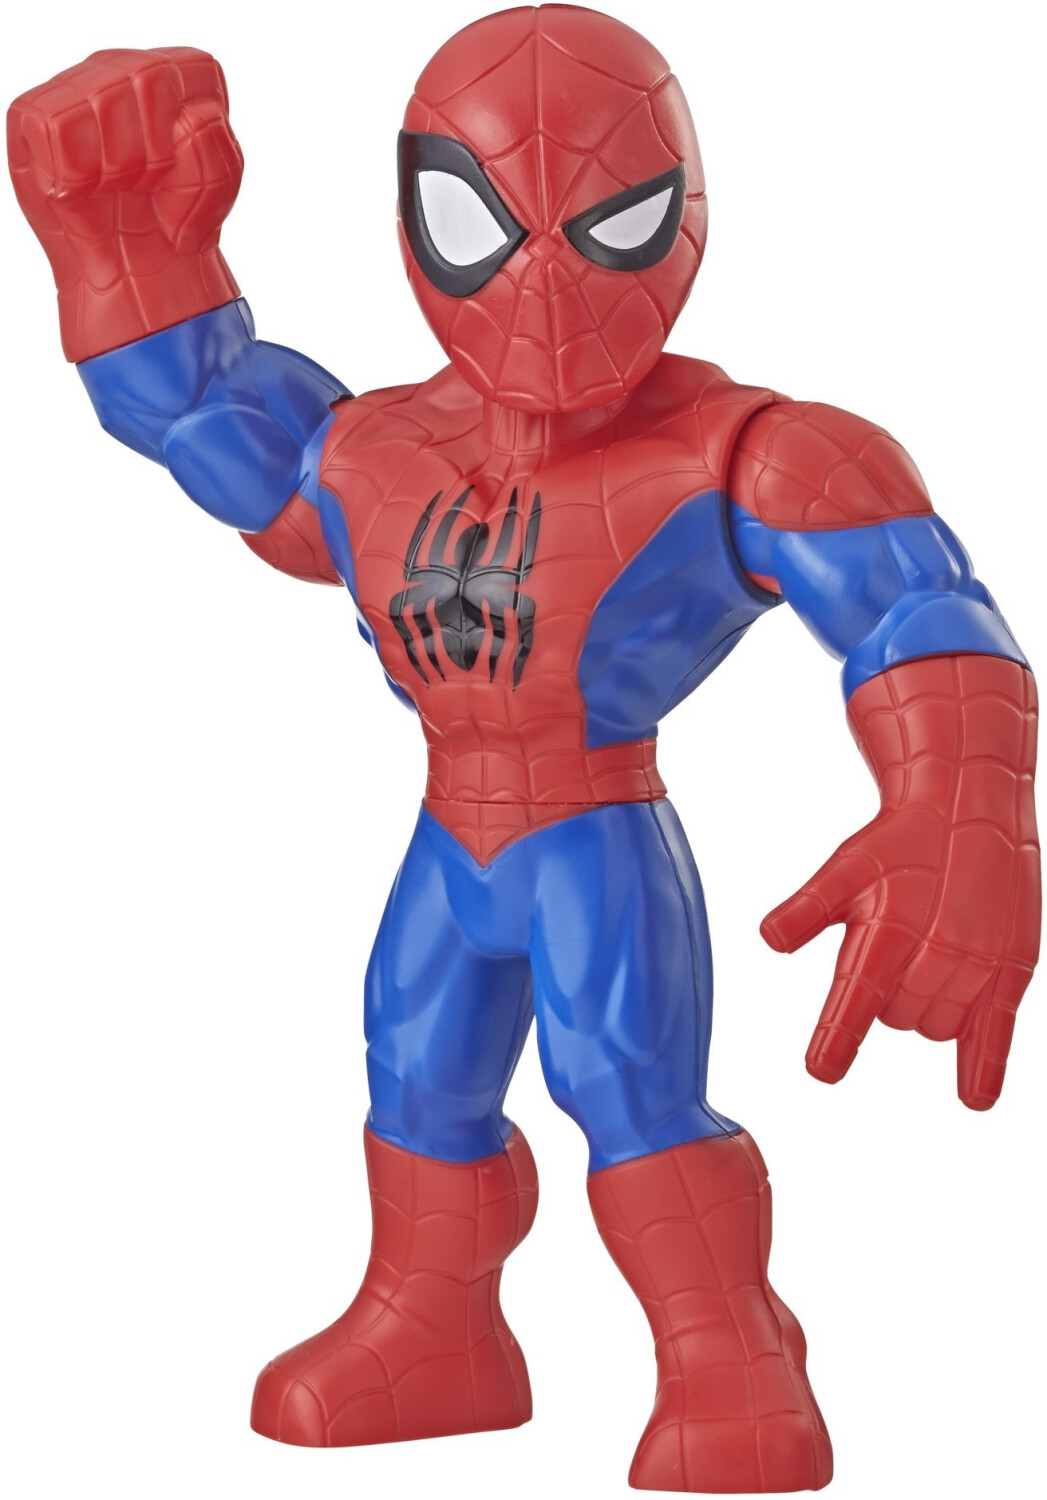 https://cdn.idealo.com/folder/Product/200551/0/200551021/s4_produktbild_max/hasbro-playskool-heroes-marvel-super-hero-adventures-mega-mighties-spider-man.jpg